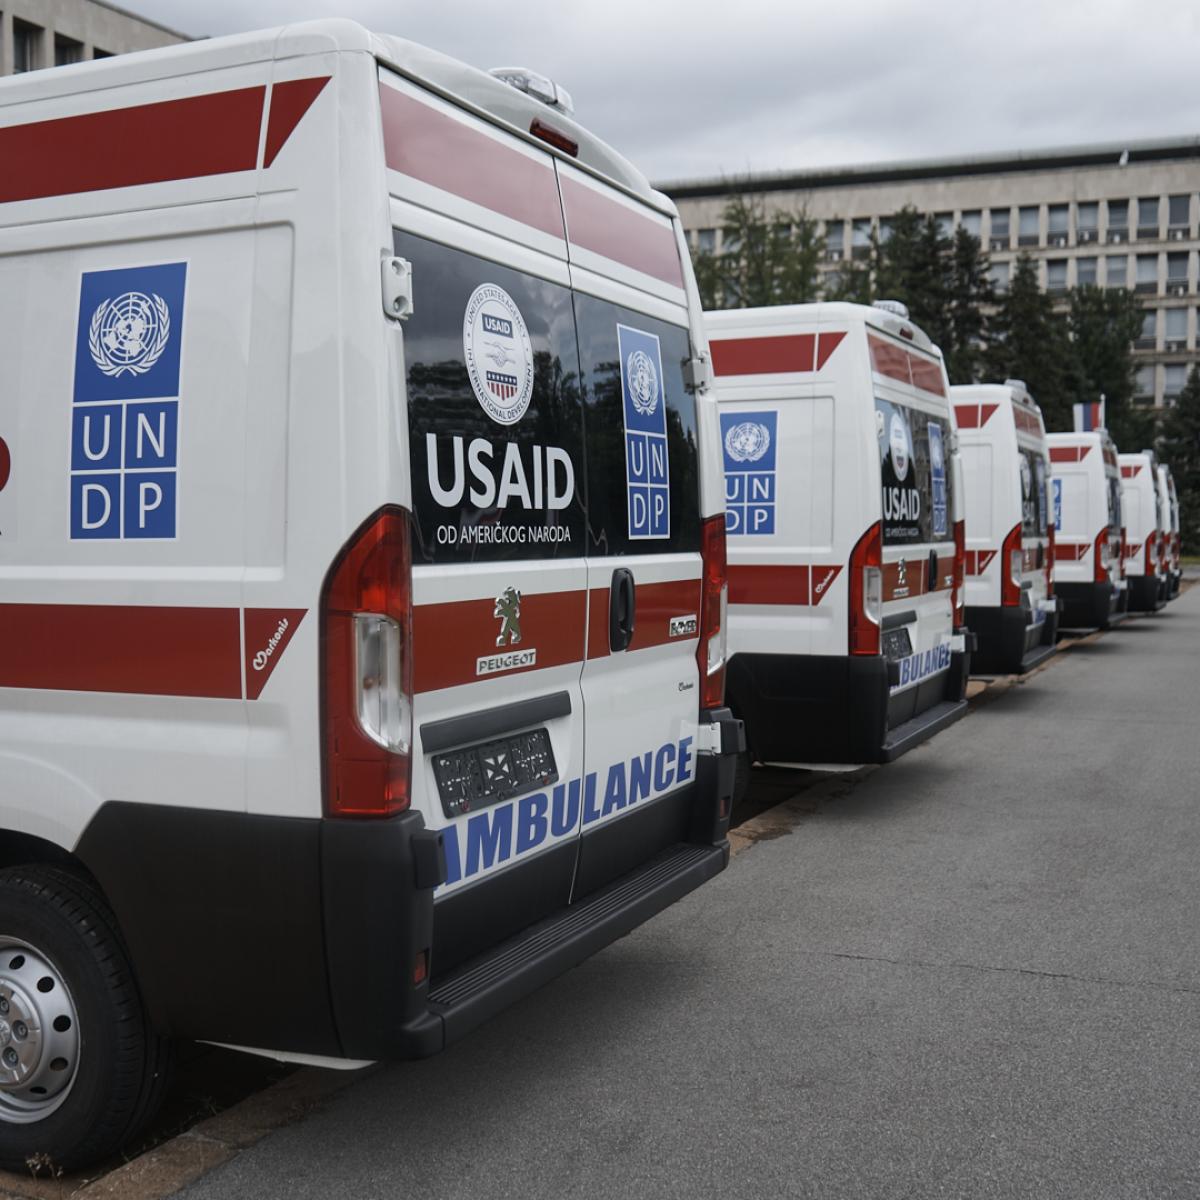 Sjedinjene Američke Države donirale 6 novih ambulantnih vozila za zdravstvene ustanove u Srbiji 